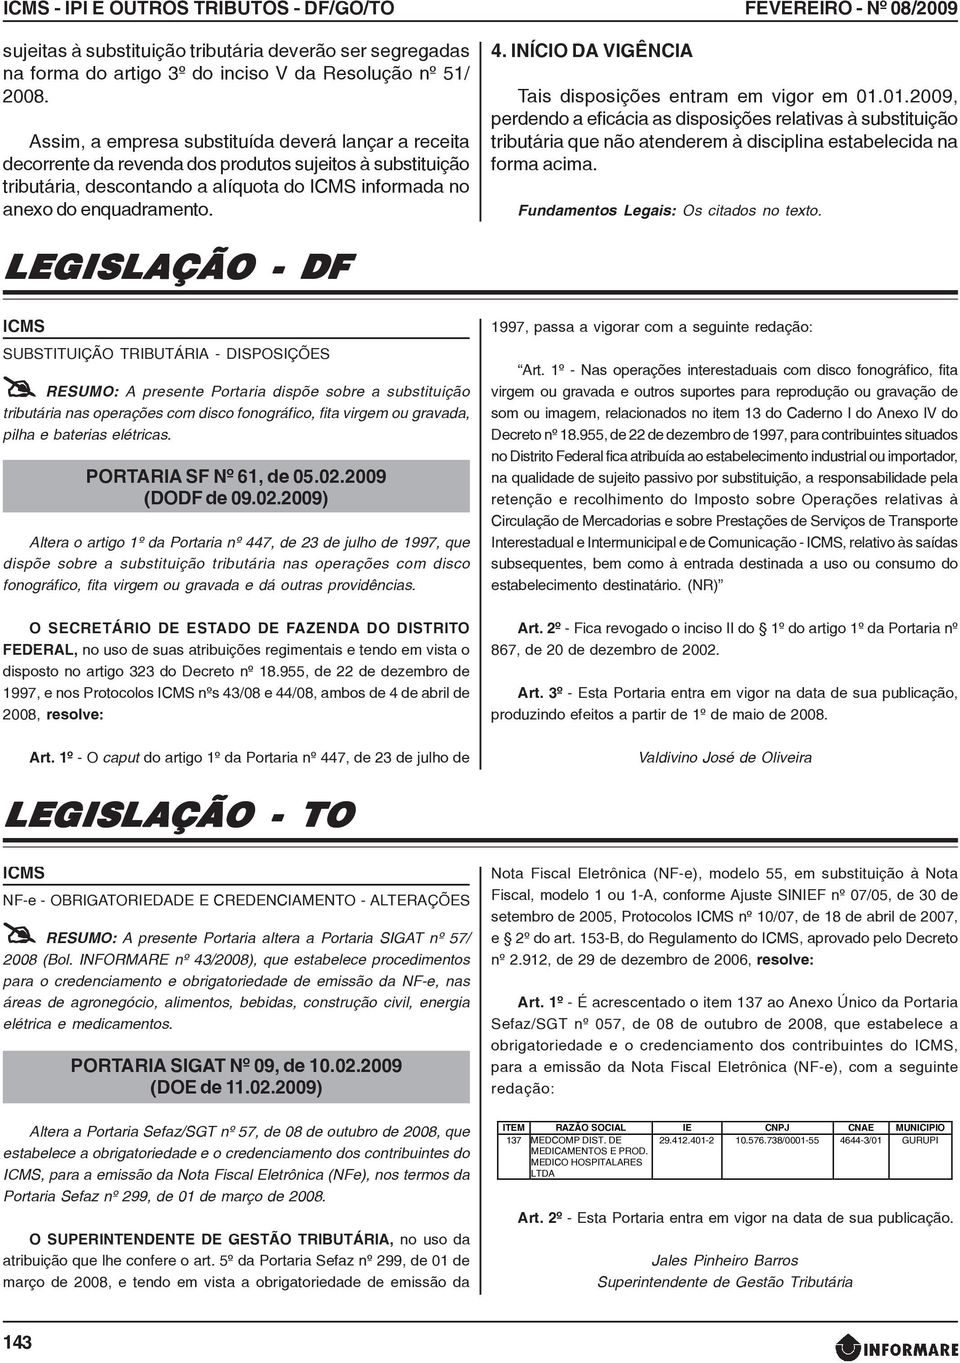 INÍCIO DA VIGÊNCIA FEVEREIRO - Nº 08/2009 Tais disposições entram em vigor em 01.